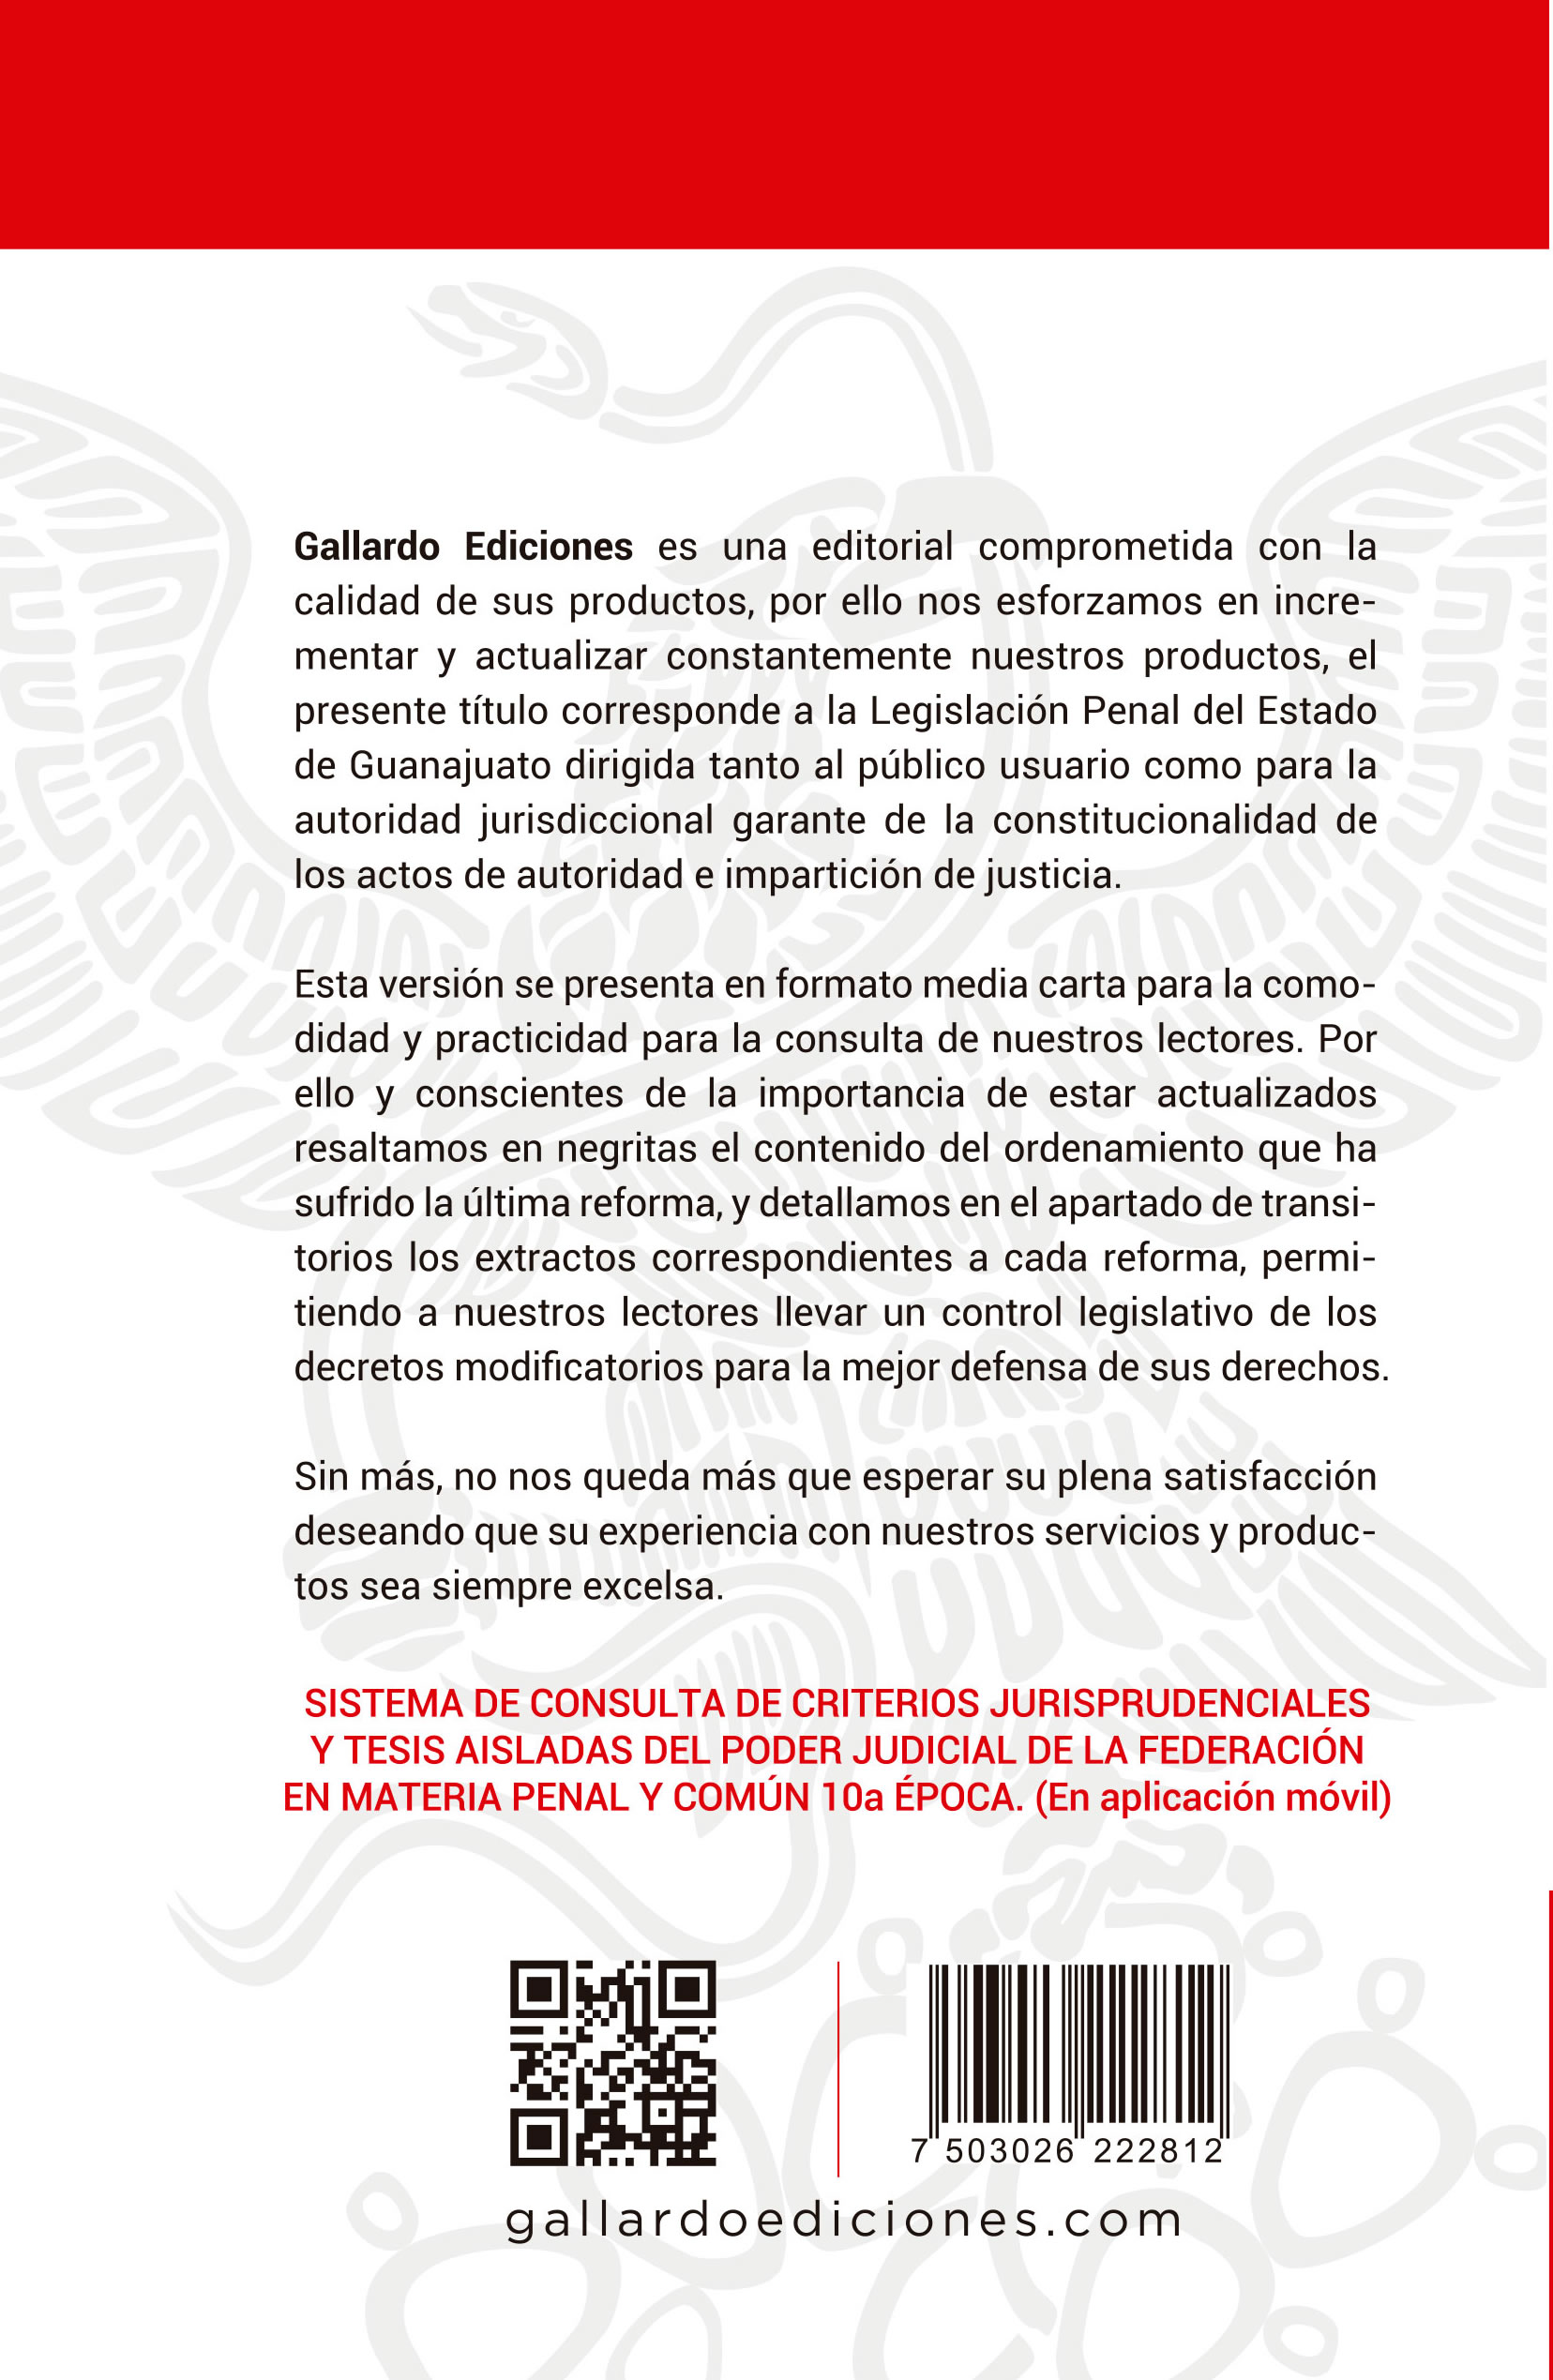 Código Penal de Guanajuato Legislación Gallardo Ediciones